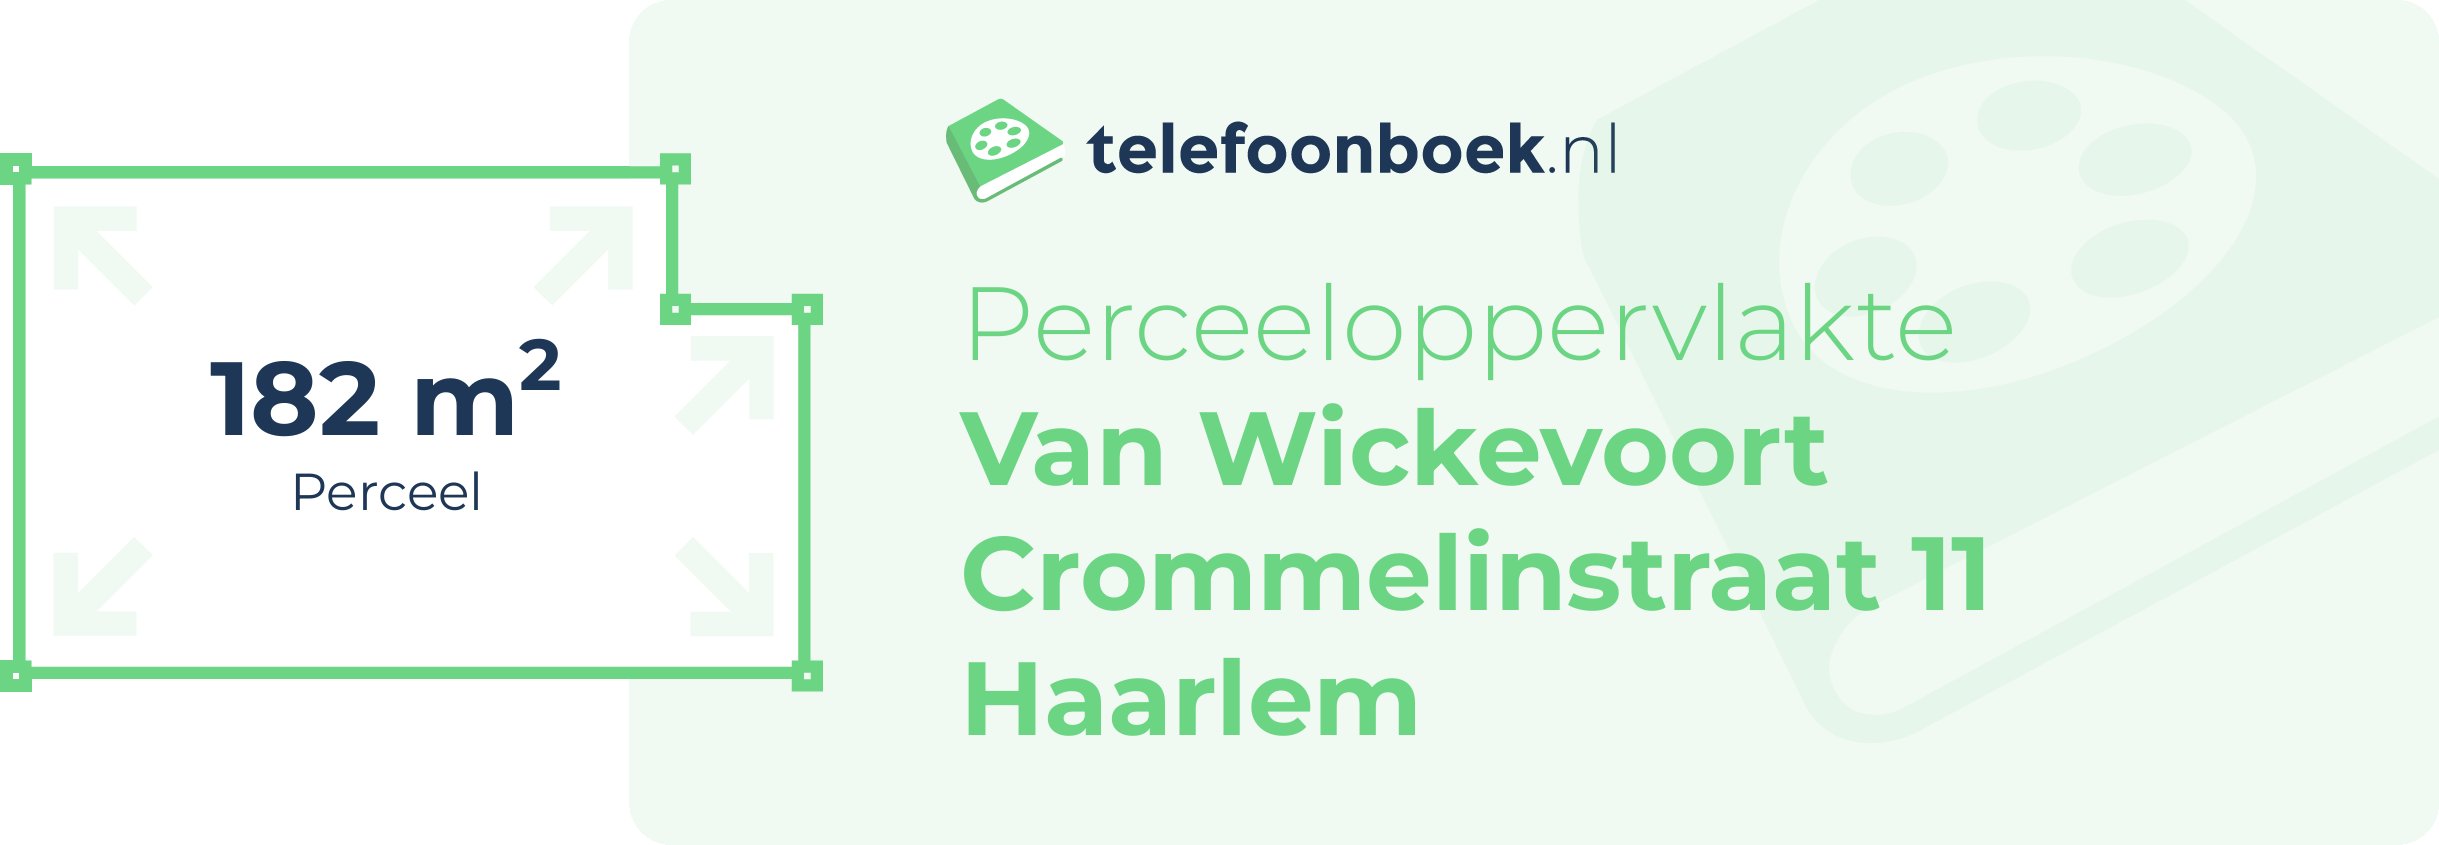 Perceeloppervlakte Van Wickevoort Crommelinstraat 11 Haarlem